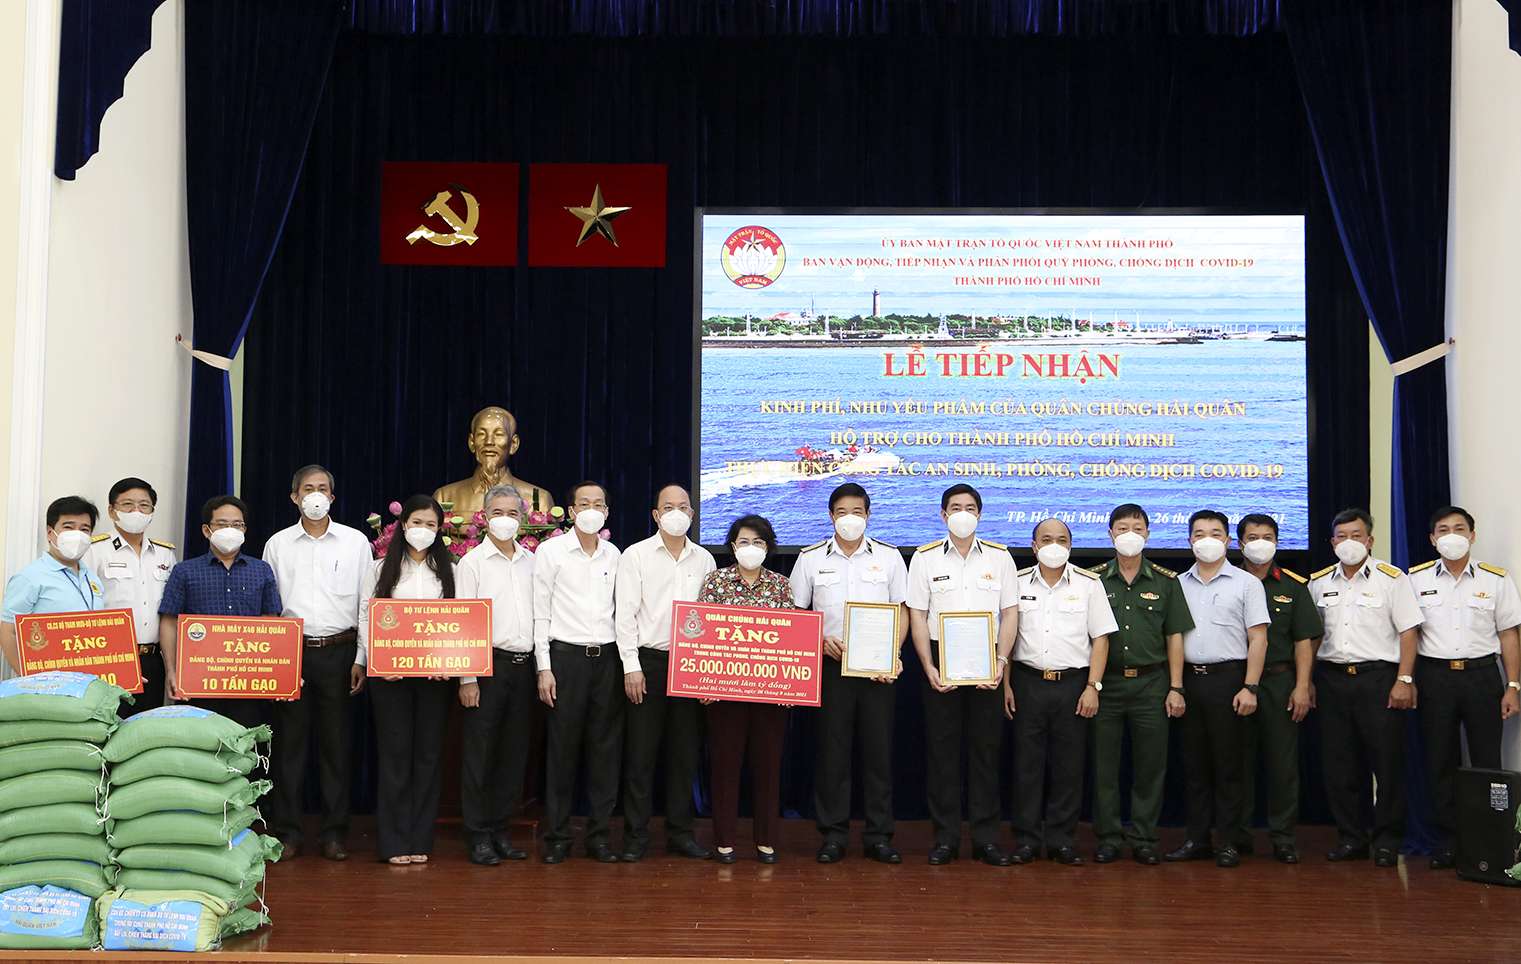 Quân chủng Hải quân hỗ trợ TP. Hồ Chí Minh 135 tấn gạo và 25 tỷ đồng chống dịch Covid-19